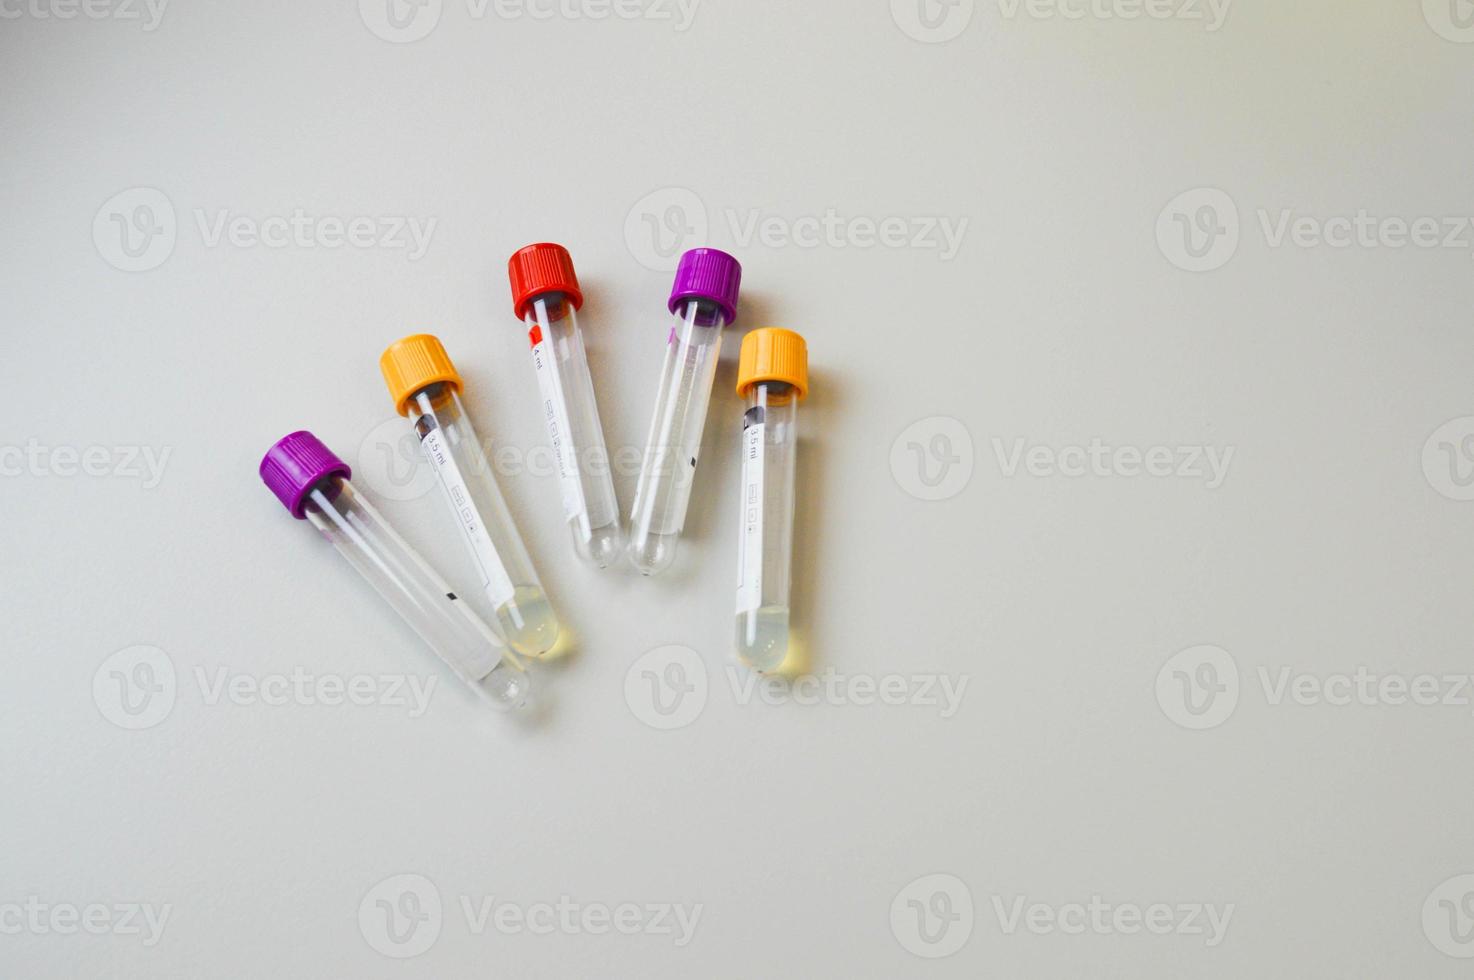 testa rör med blod prover på tabell i laboratorium. virus forskning foto